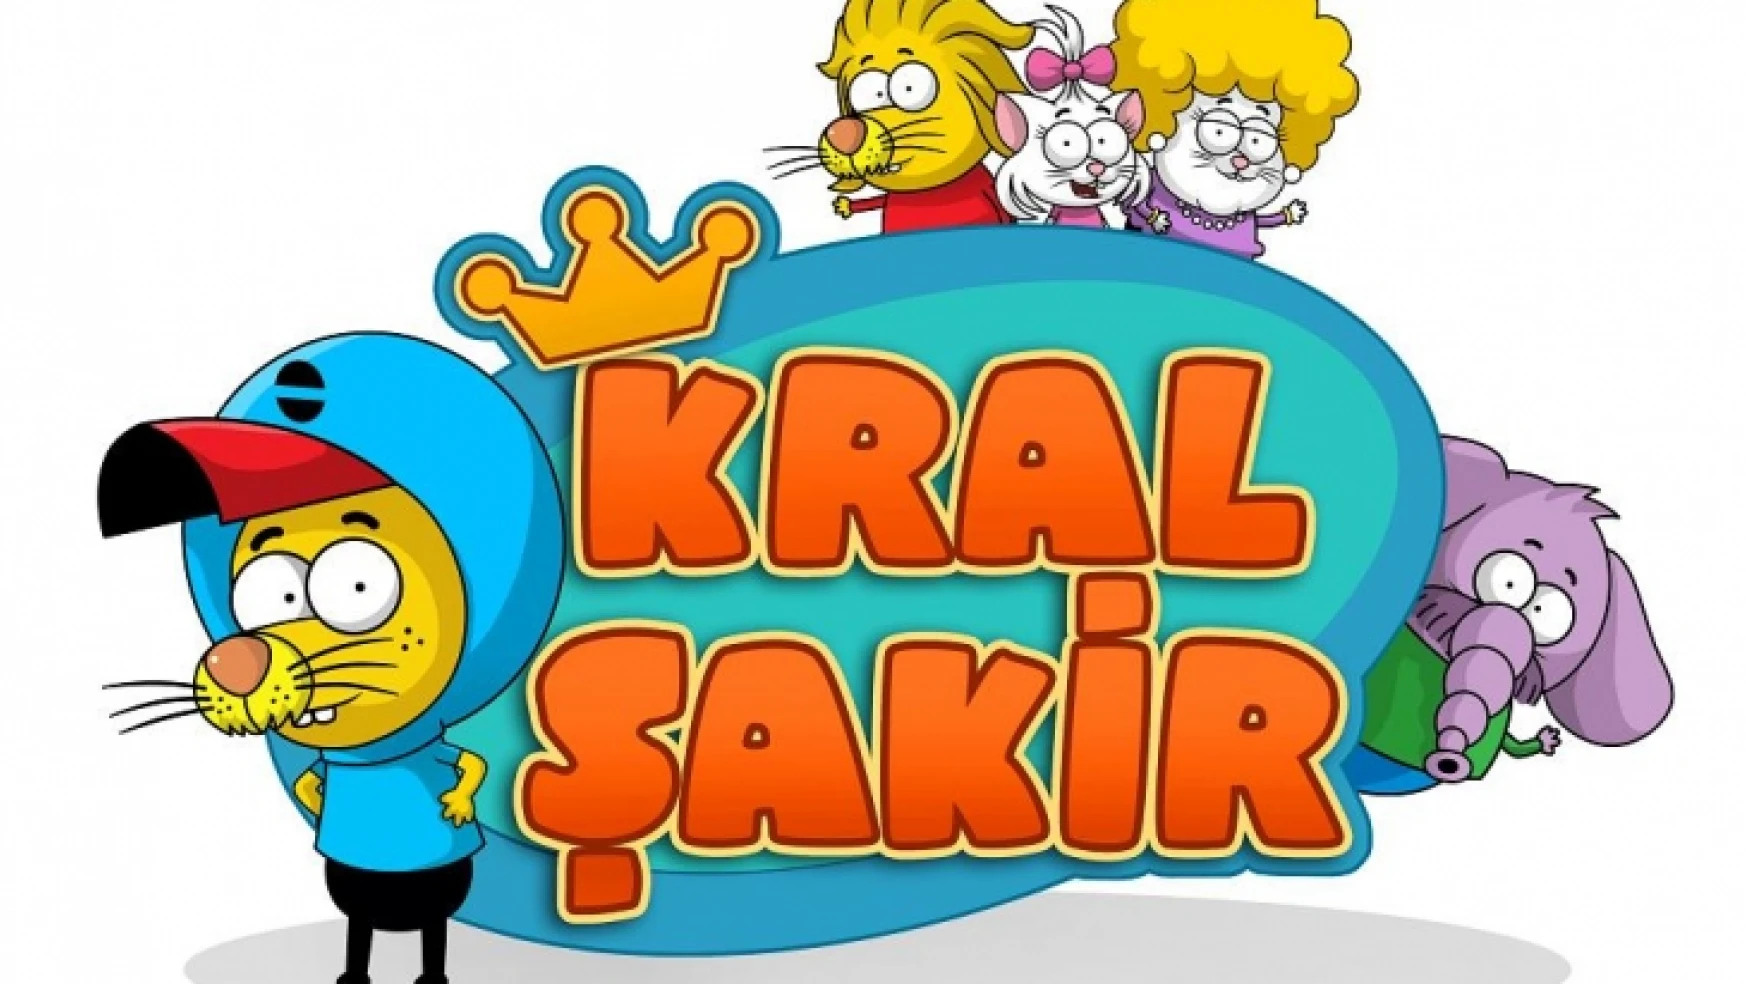 Cartoon Network Okula Dönüşü Büyük Ödüllü Kral şakir Yarışmasıyla Kutluyor